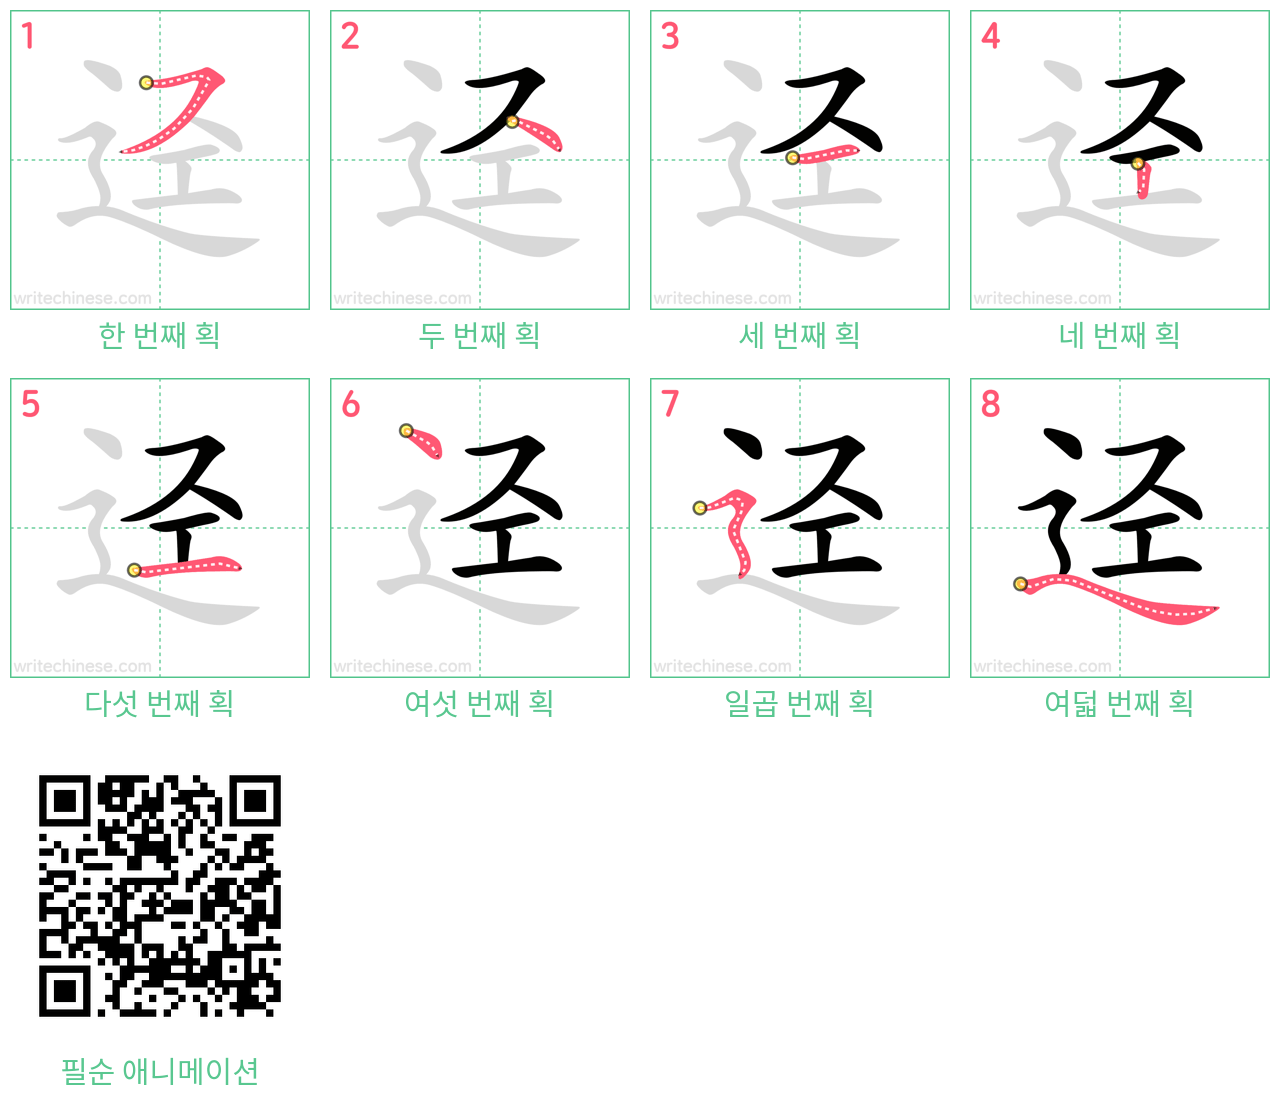 迳 step-by-step stroke order diagrams